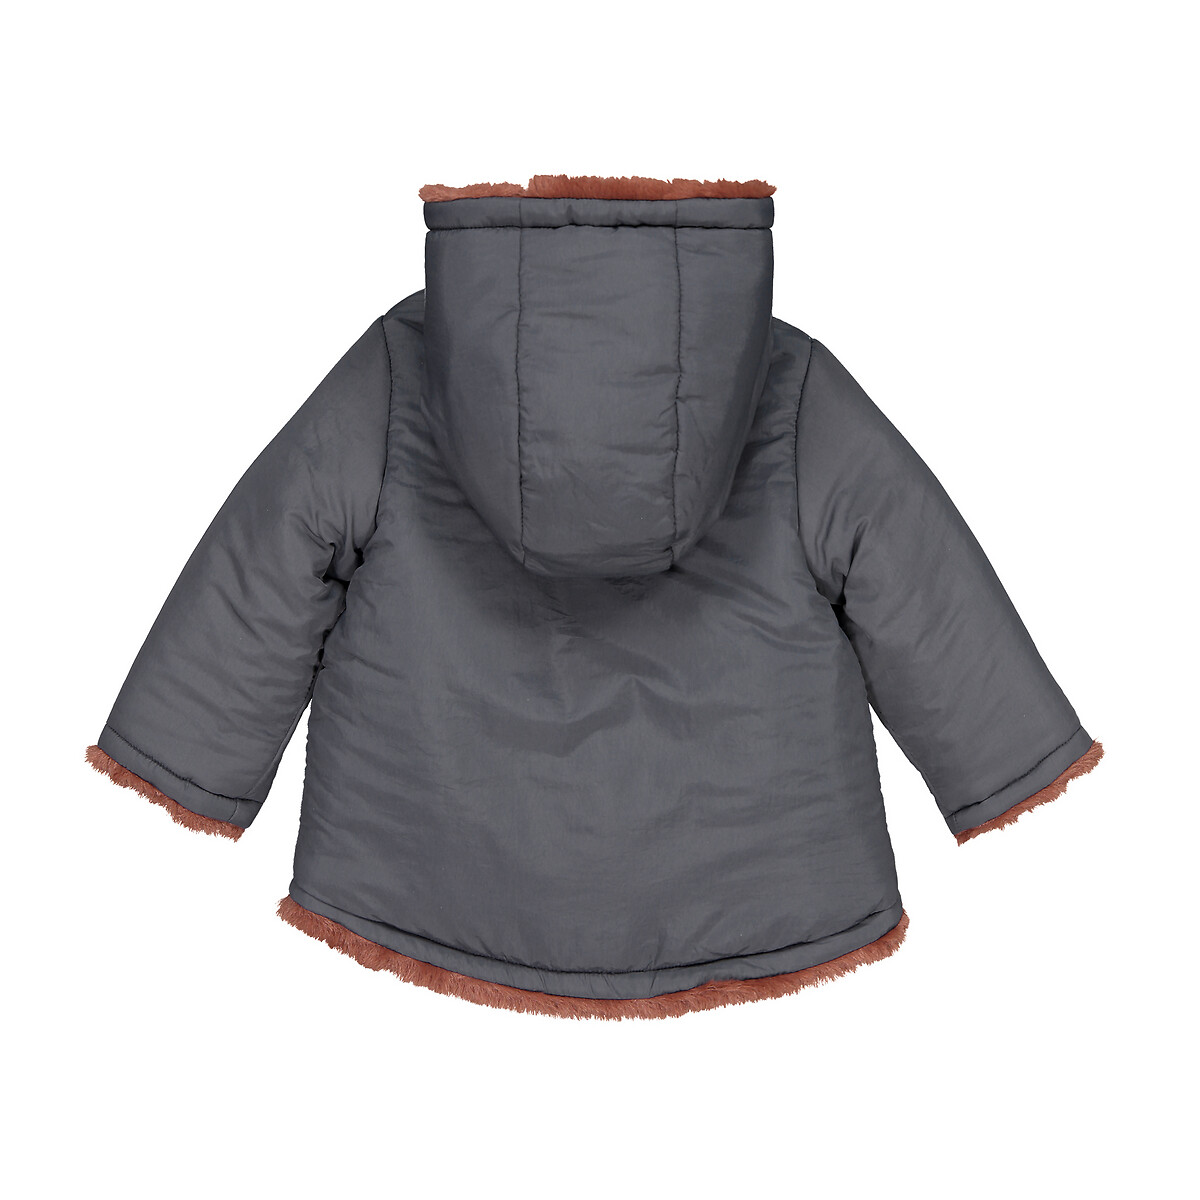 Пальто La Redoute Утепленное двустороннее с капюшоном 1 мес-3 года 3 года - 94 см каштановый, размер 3 года - 94 см - фото 2